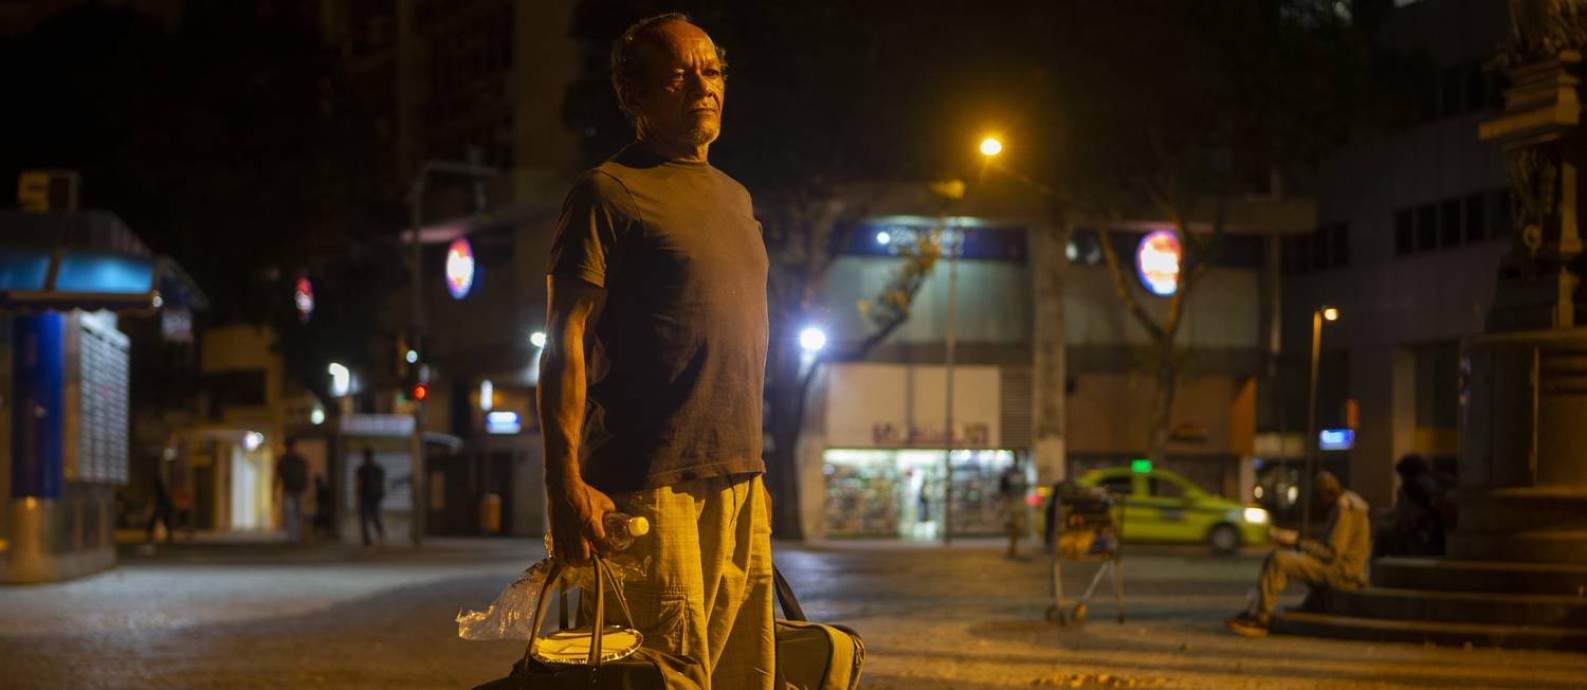 José Carlos Correia com seus pertences, que cabem em duas bolsas Foto: Alexandre Cassiano / Agência O Globo